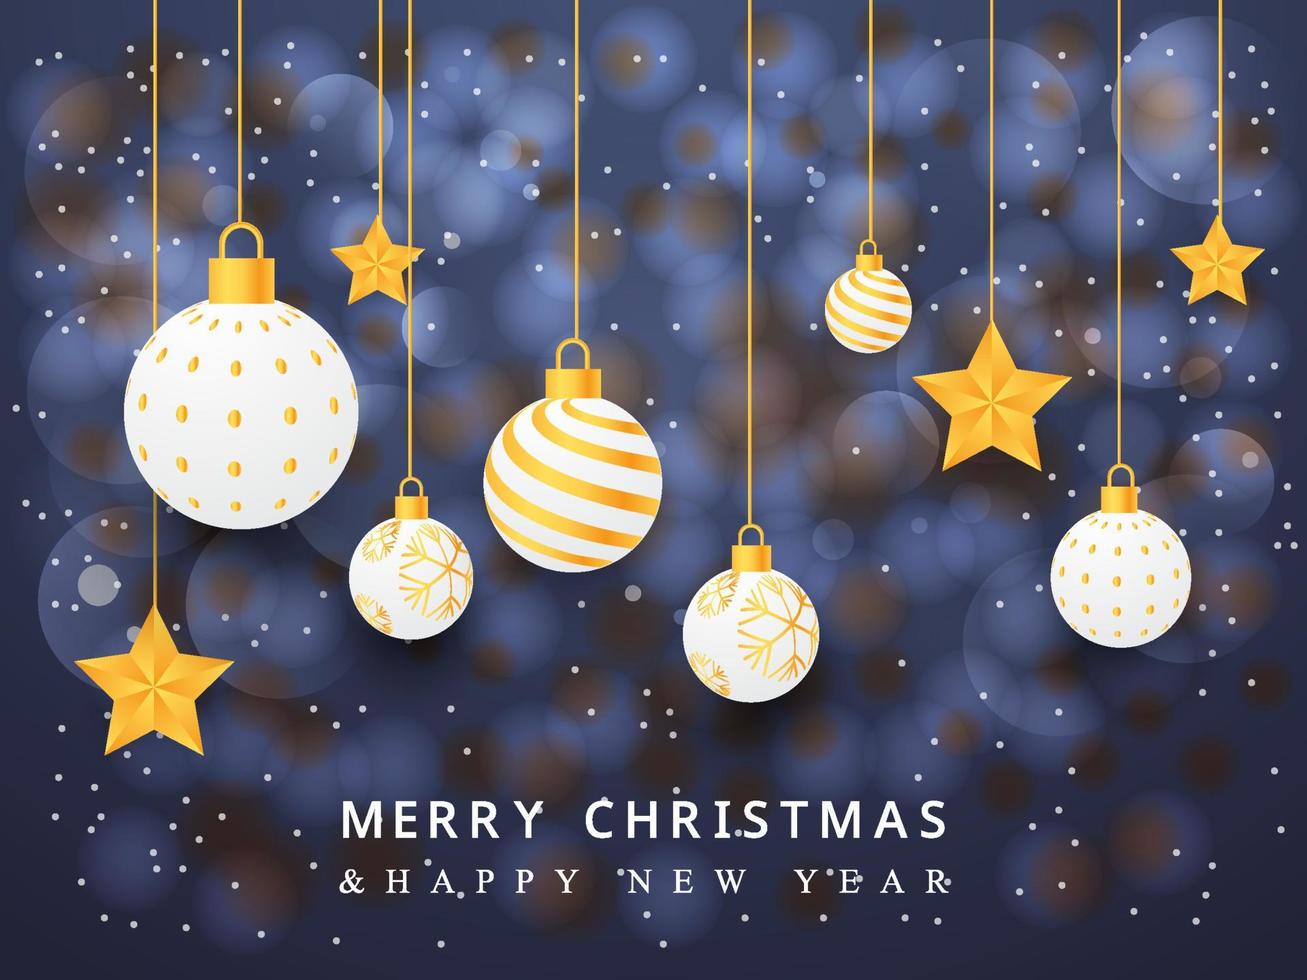 plantilla de diseño de fondo de feliz navidad, publicación en redes sociales, año nuevo 2022, feliz año nuevo, banner de año nuevo, tarjeta de felicitación, adornos navideños, bola, estrella, cartel de fiesta de año nuevo, banner web. vector